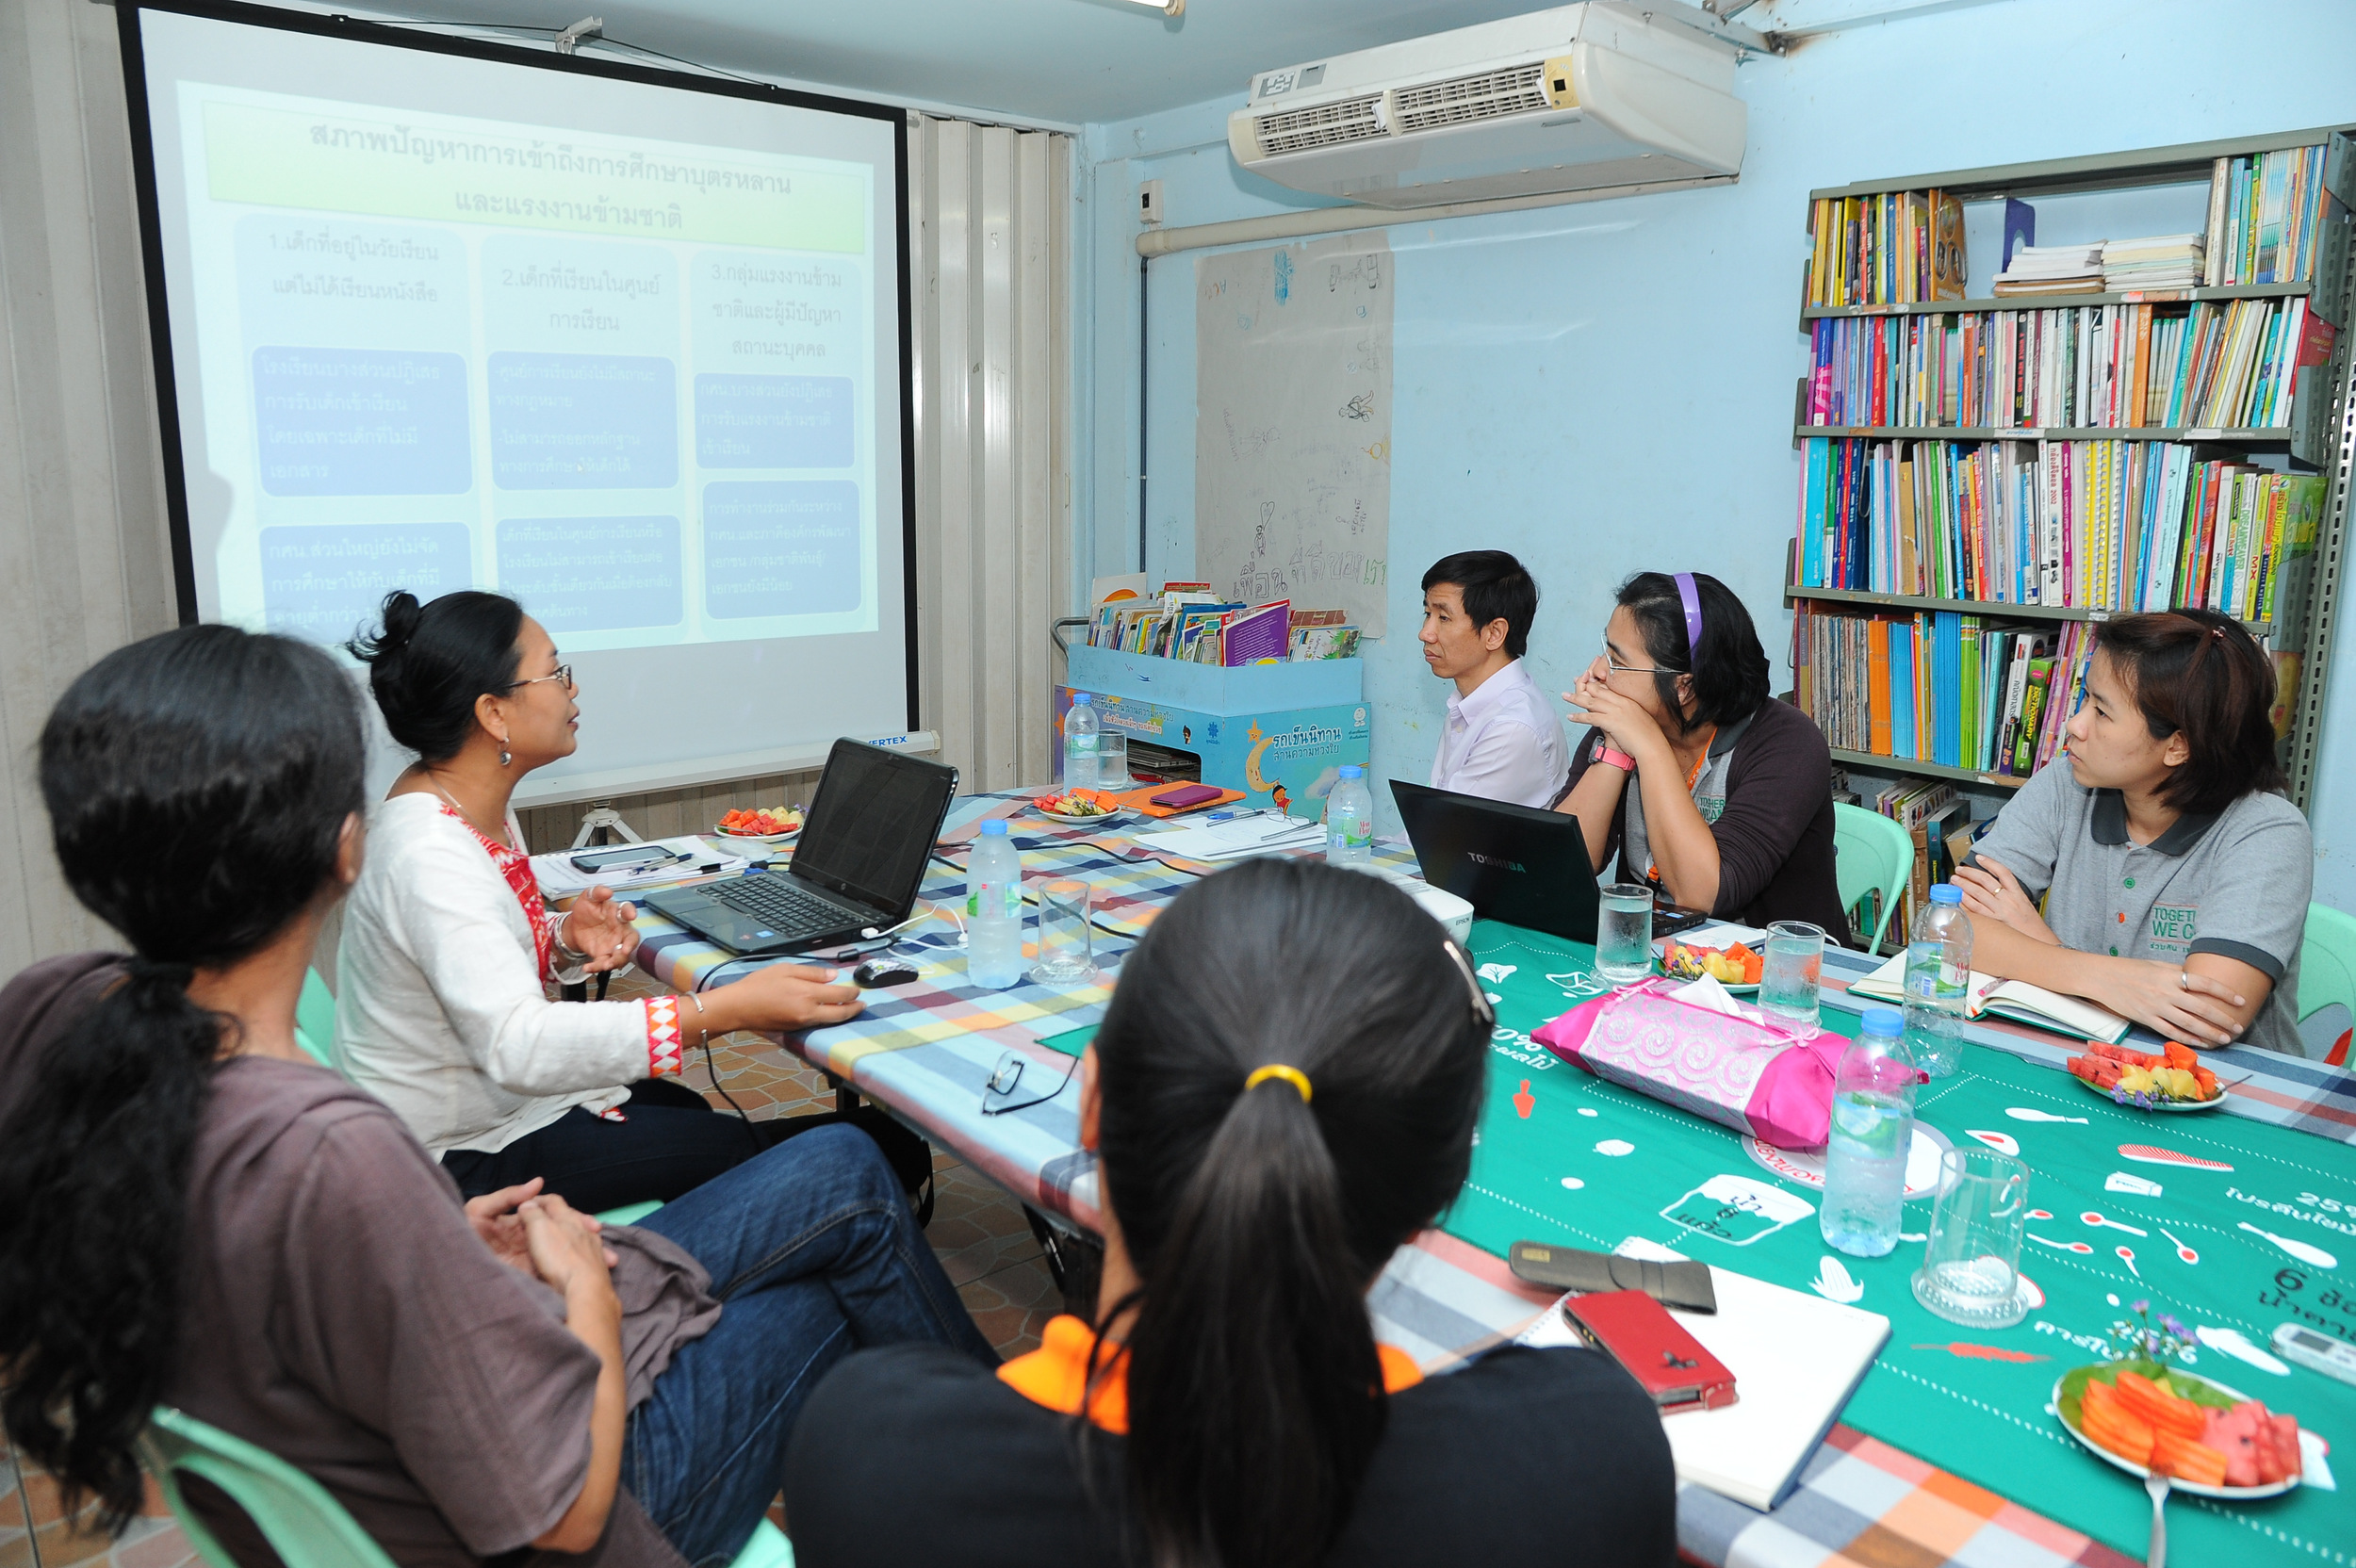 สสส. หนุนภาคี ส่งเสริมการศึกษาแรงงานข้ามชาติ thaihealth